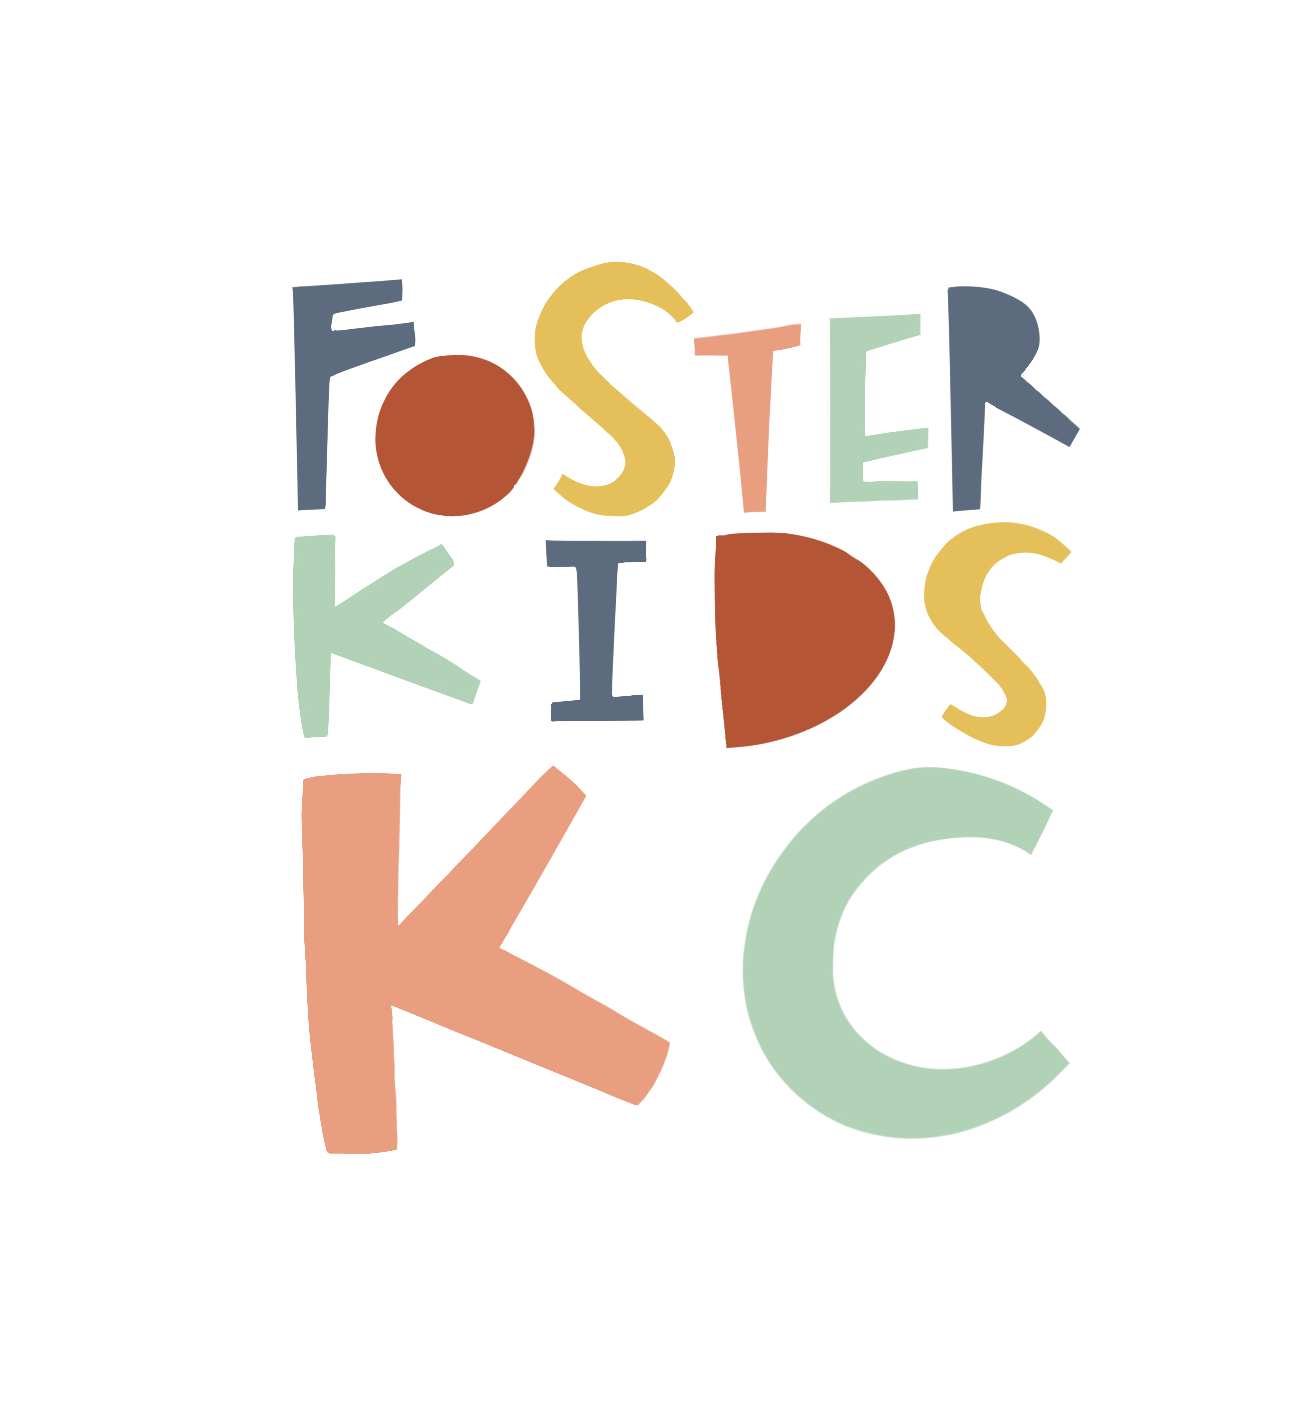 Foster Kids KC